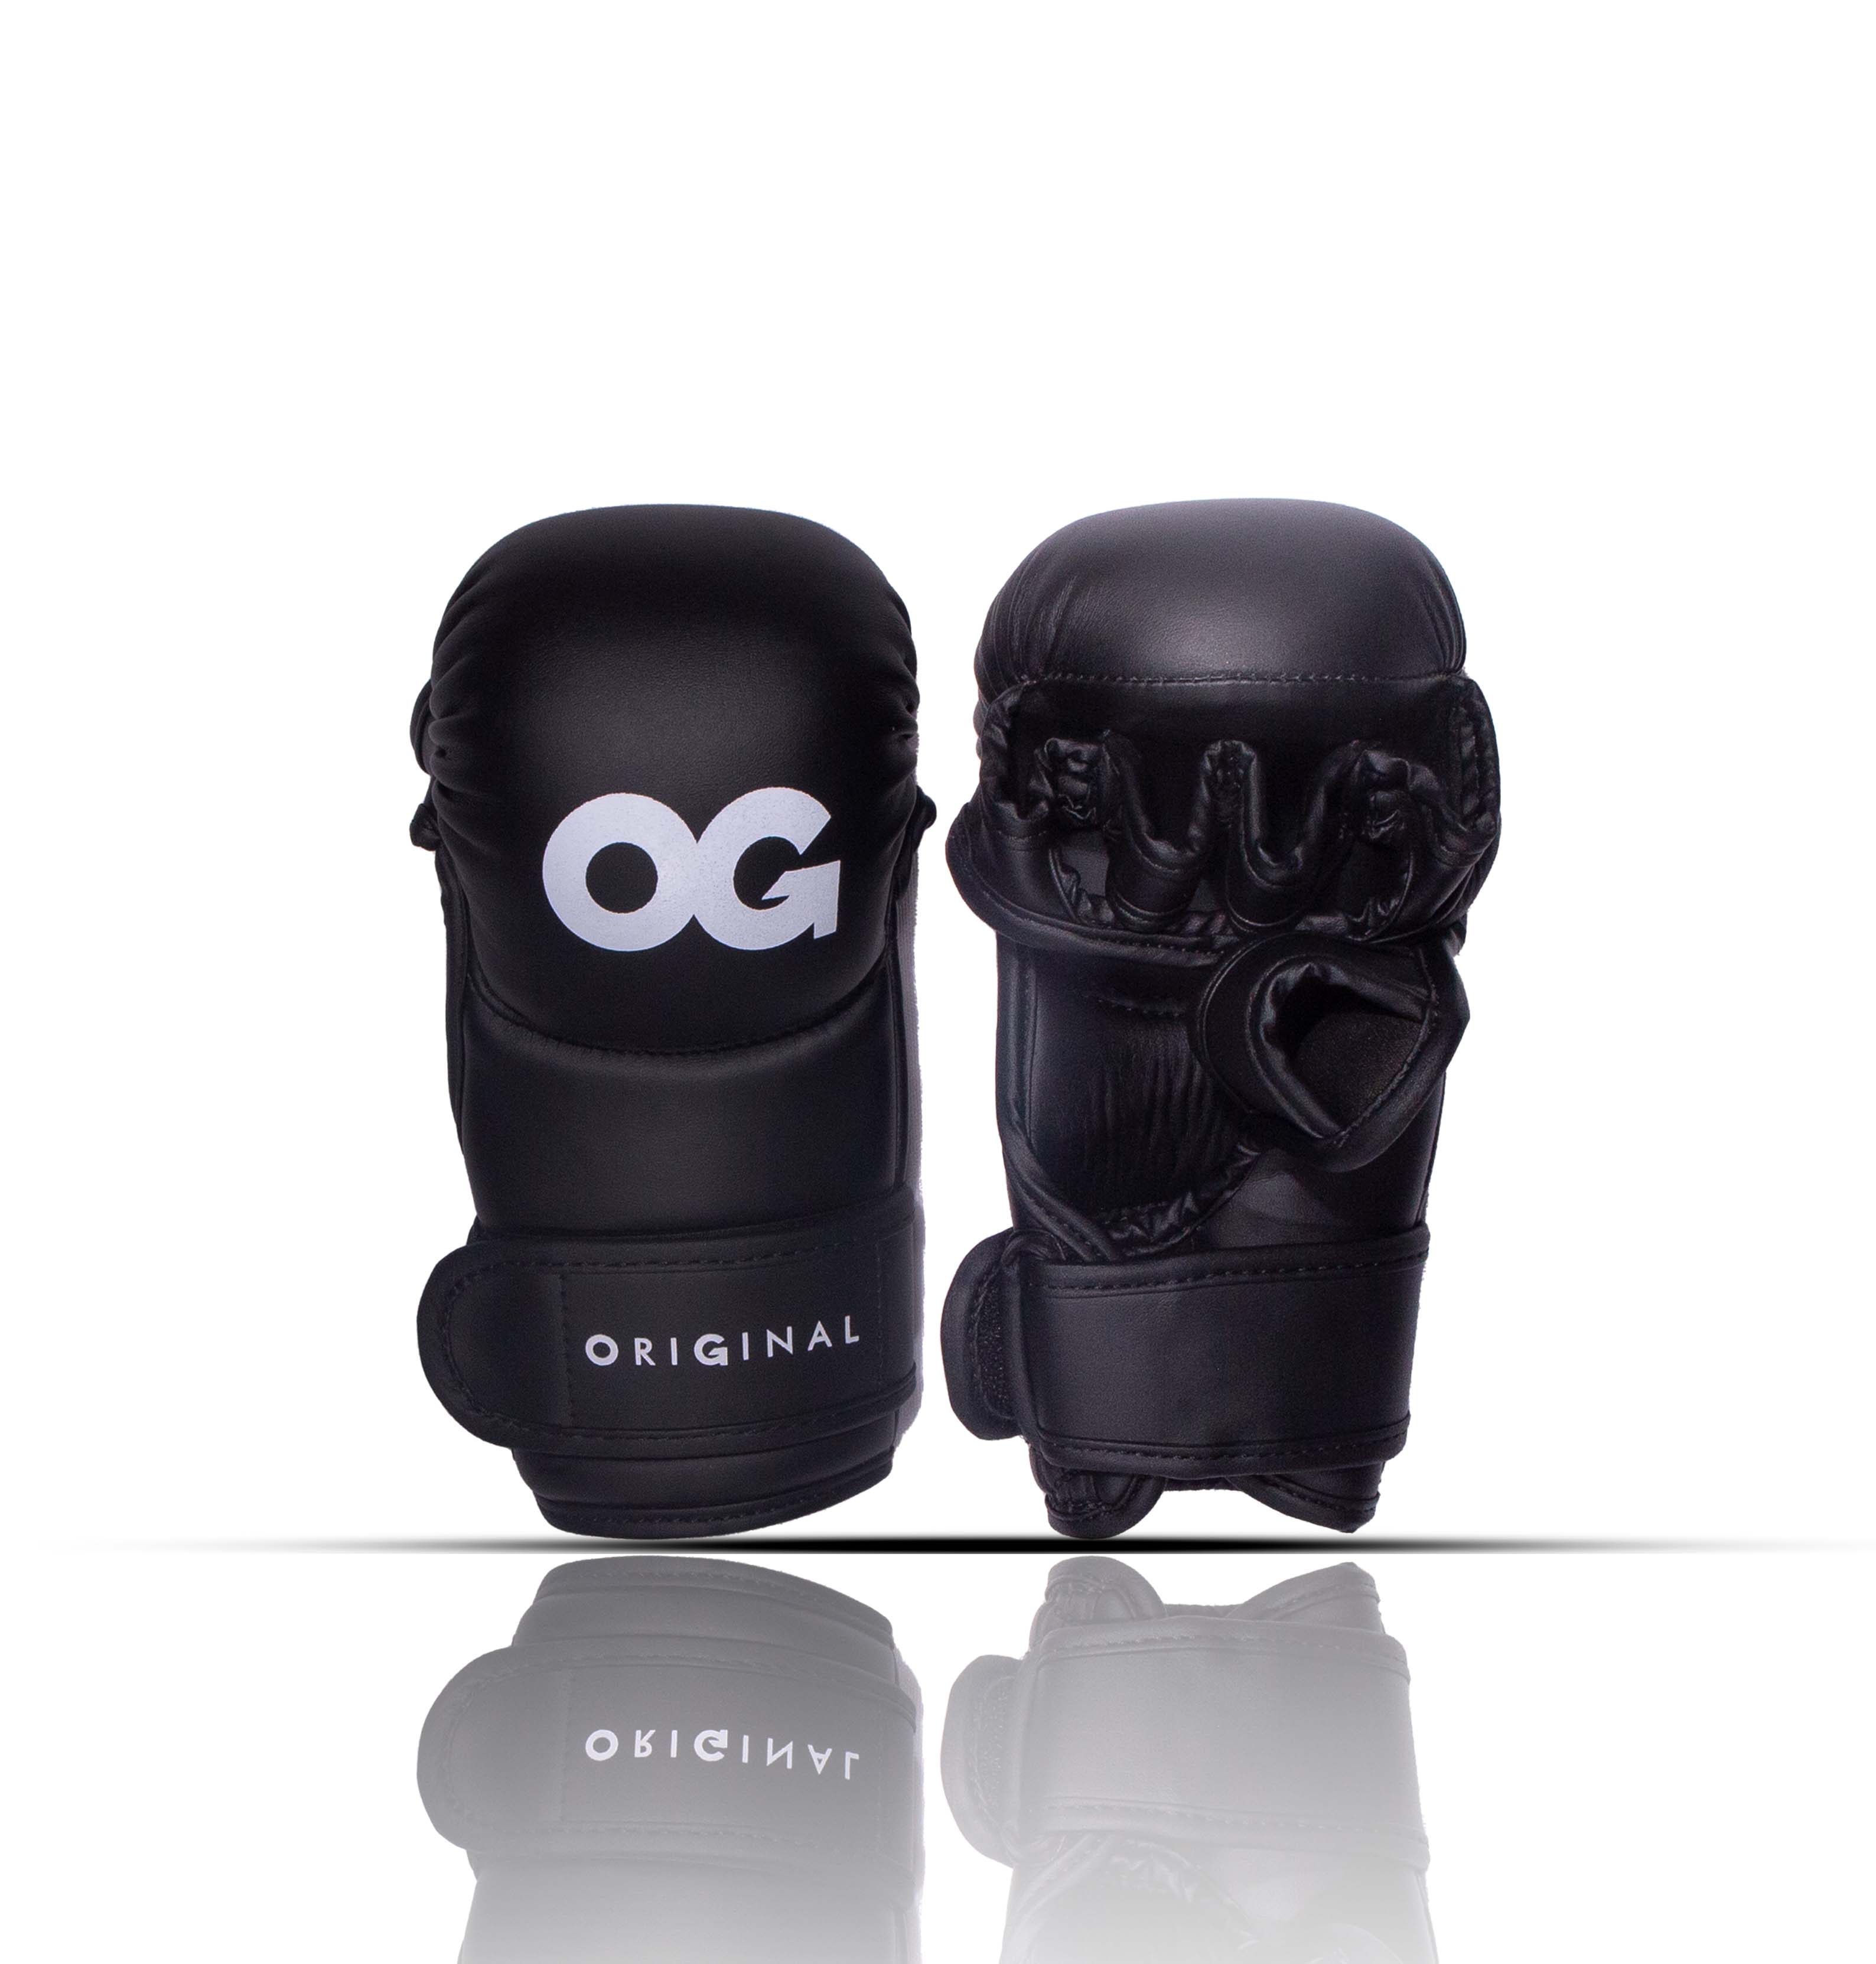 Black OG MMA Sparring Gloves Fightwear Front/Back